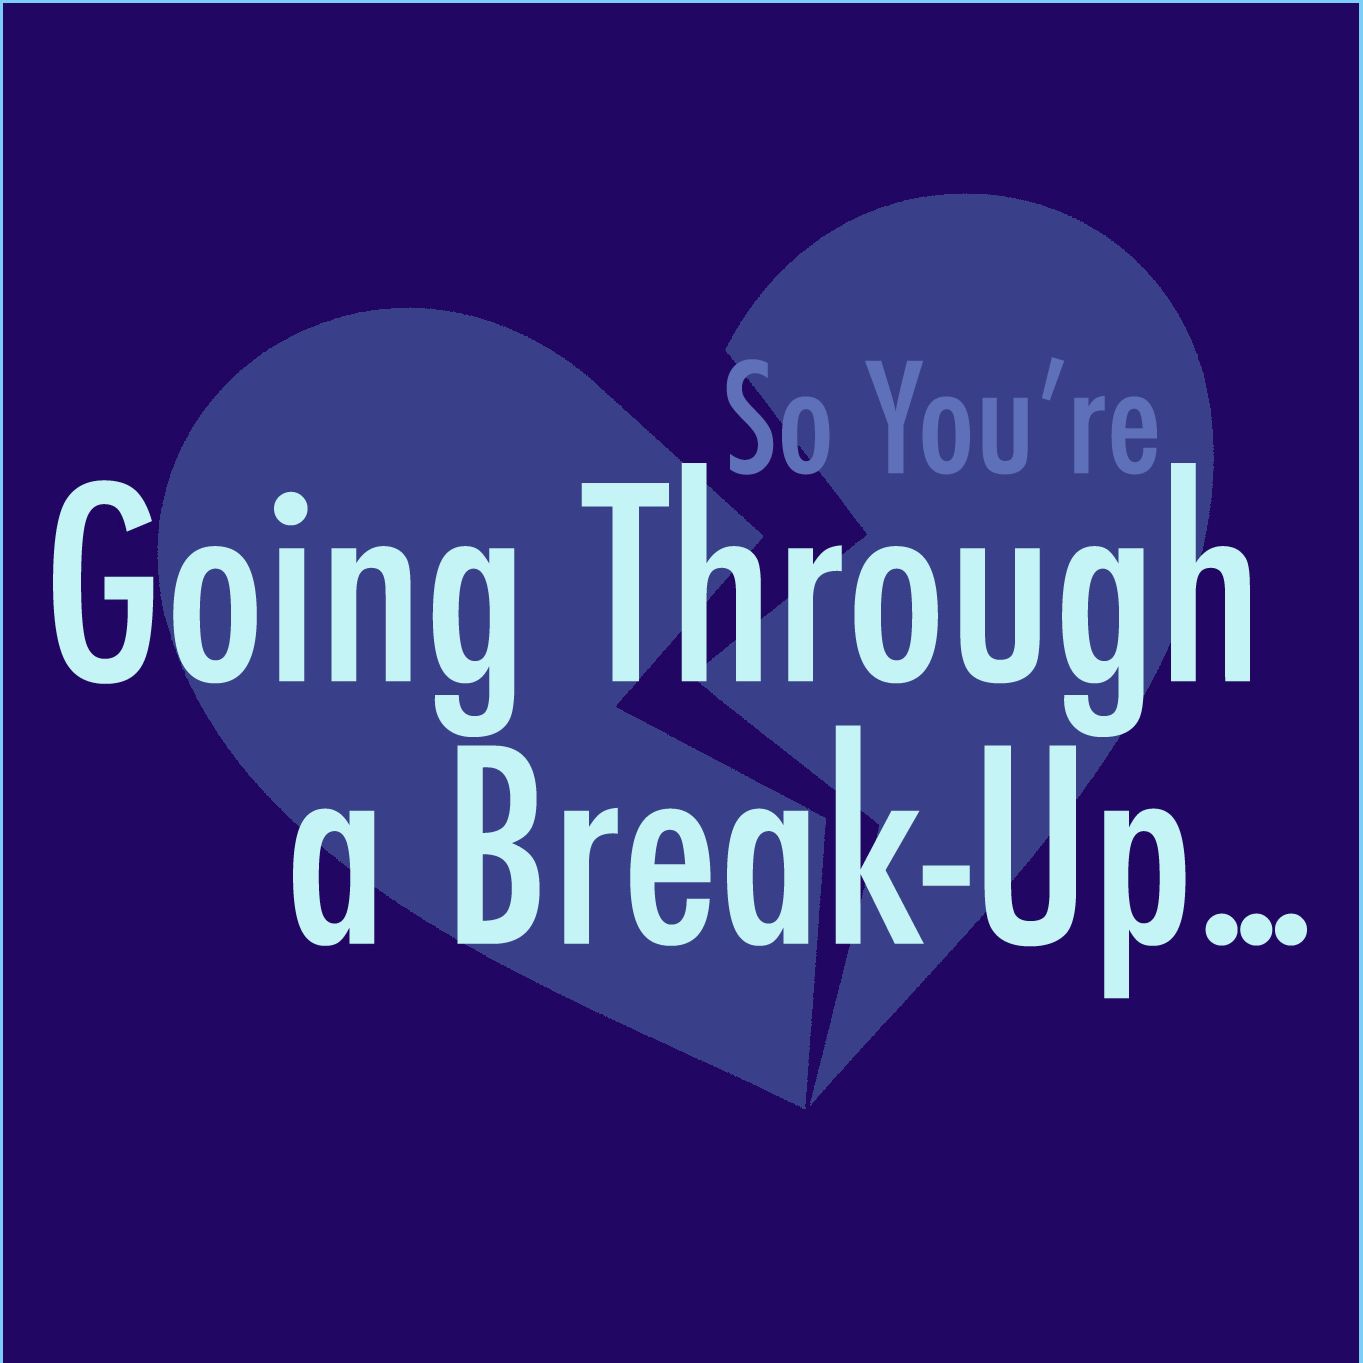 So, You're Going Through a Break-up